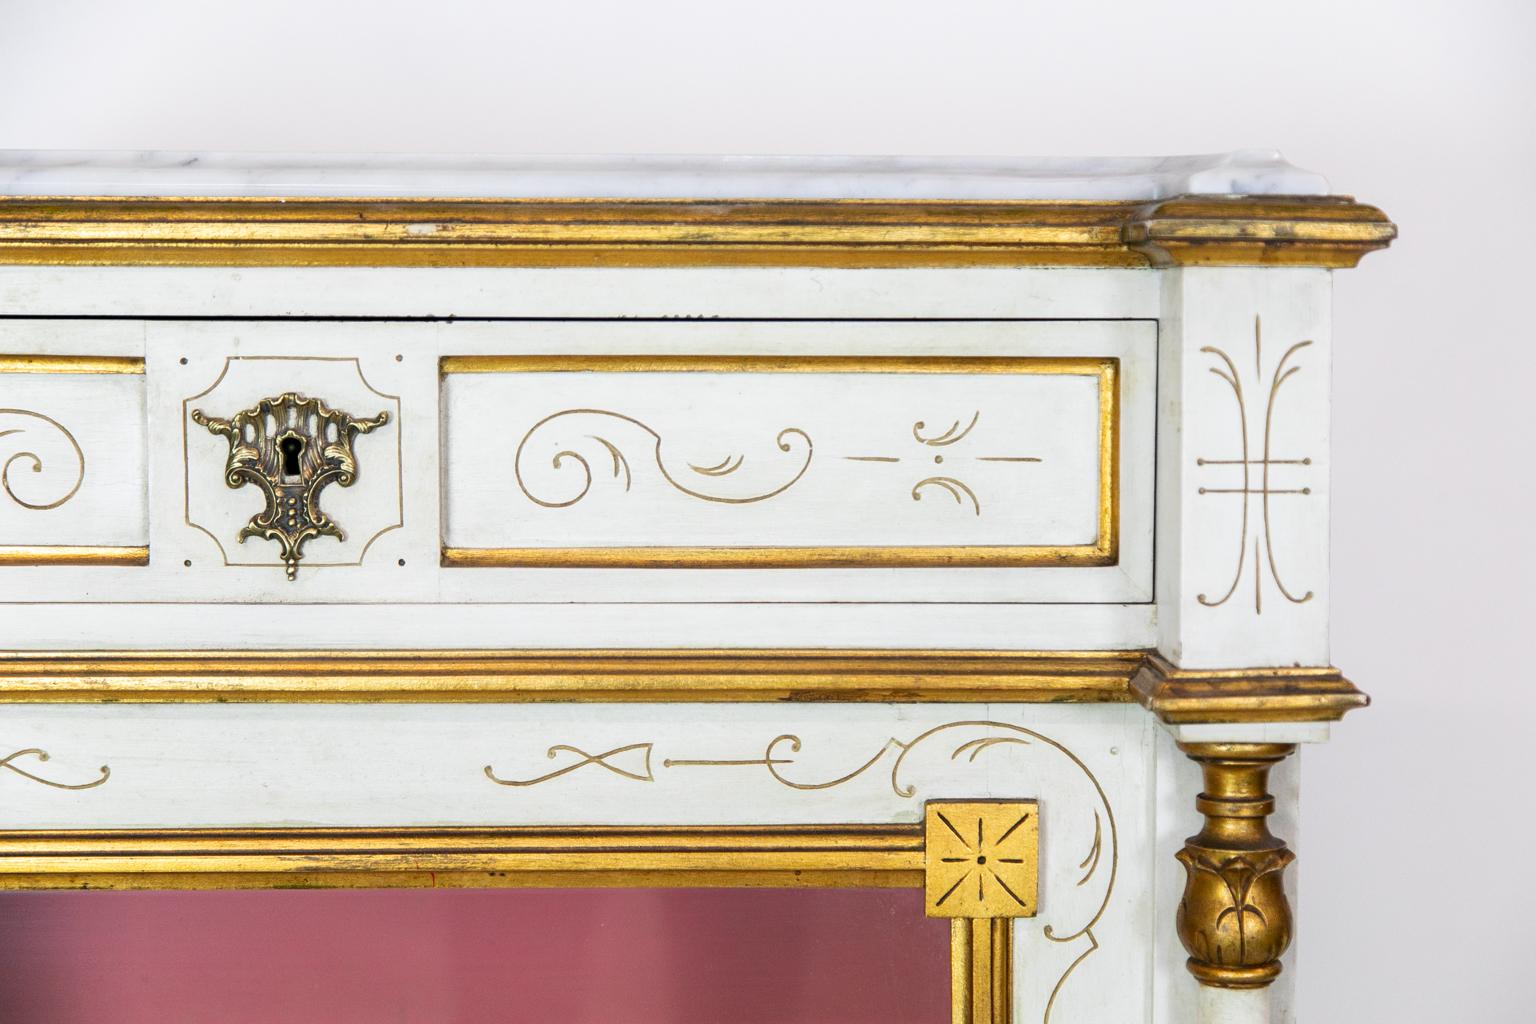 Cette vitrine présente un plateau en marbre de Carrera de forme ogive encadré par une moulure dorée. La frise présente deux panneaux en retrait avec des arabesques stylisées en or incisé. Les montants de l'avant comportent deux colonnes cannelées de